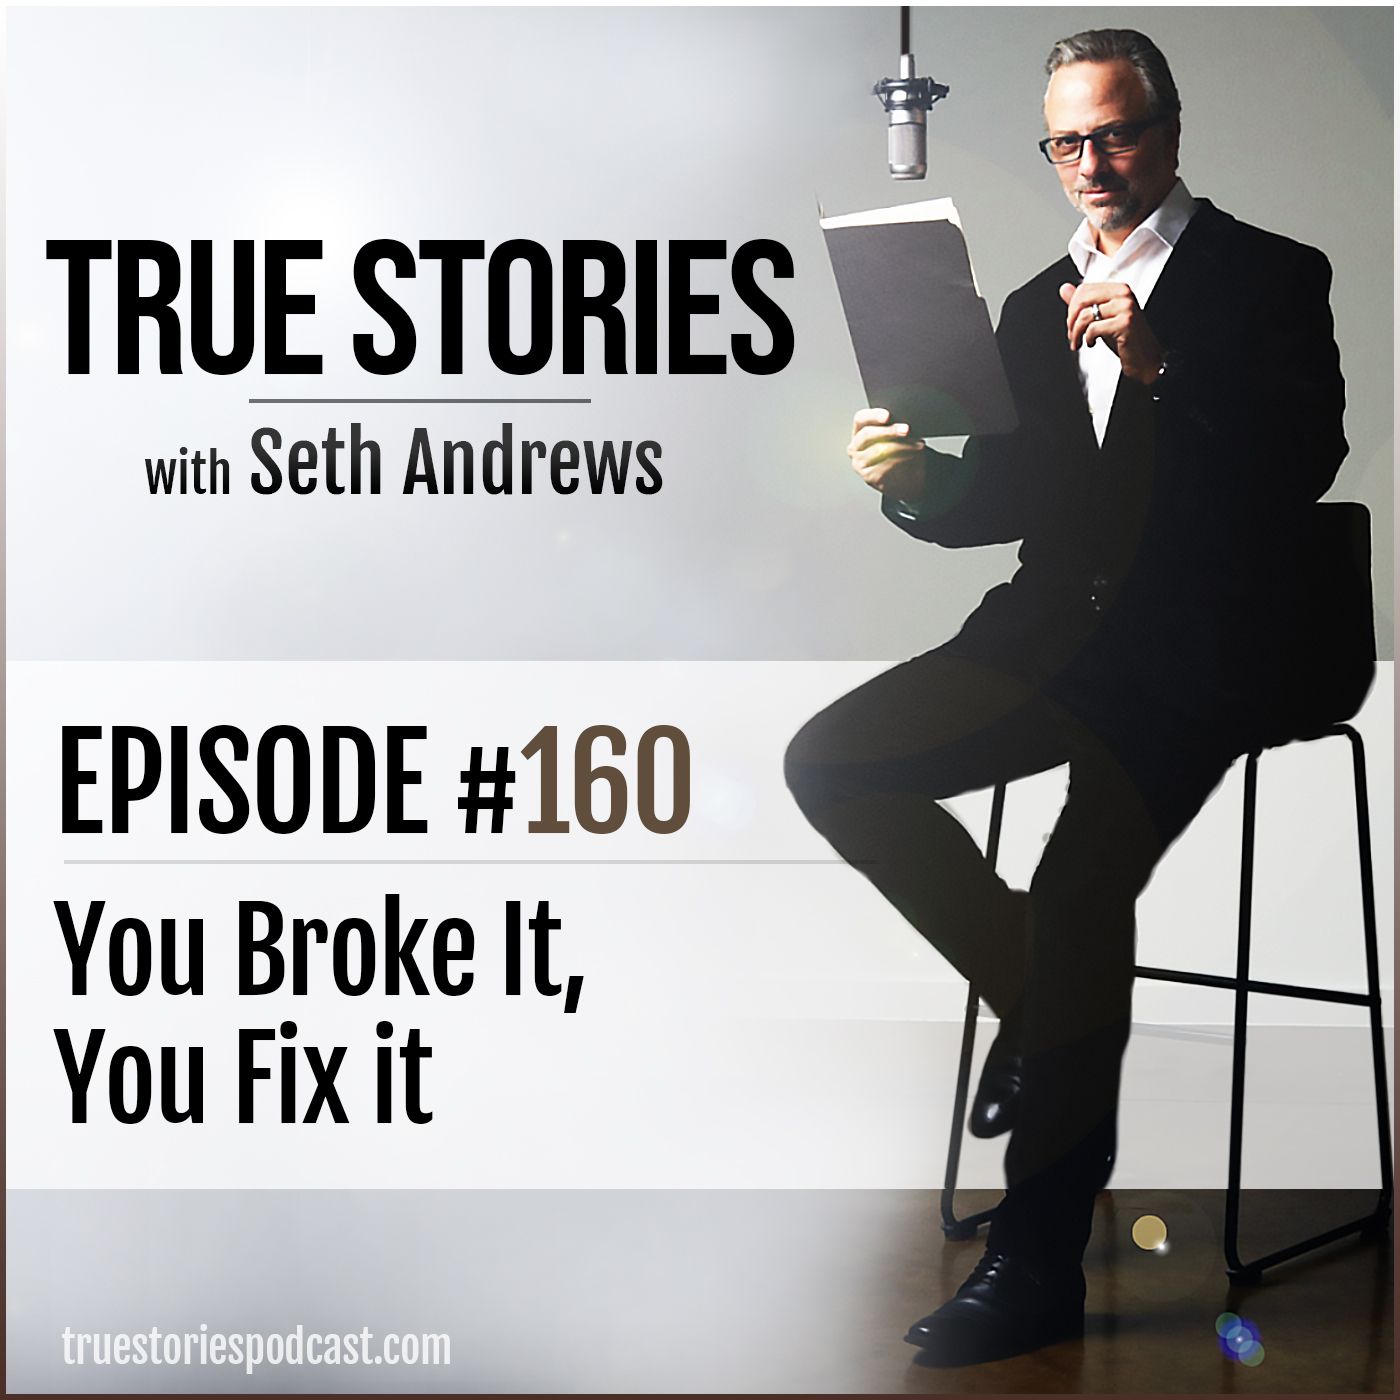 True Stories #160 - You Broke it, You Fix It